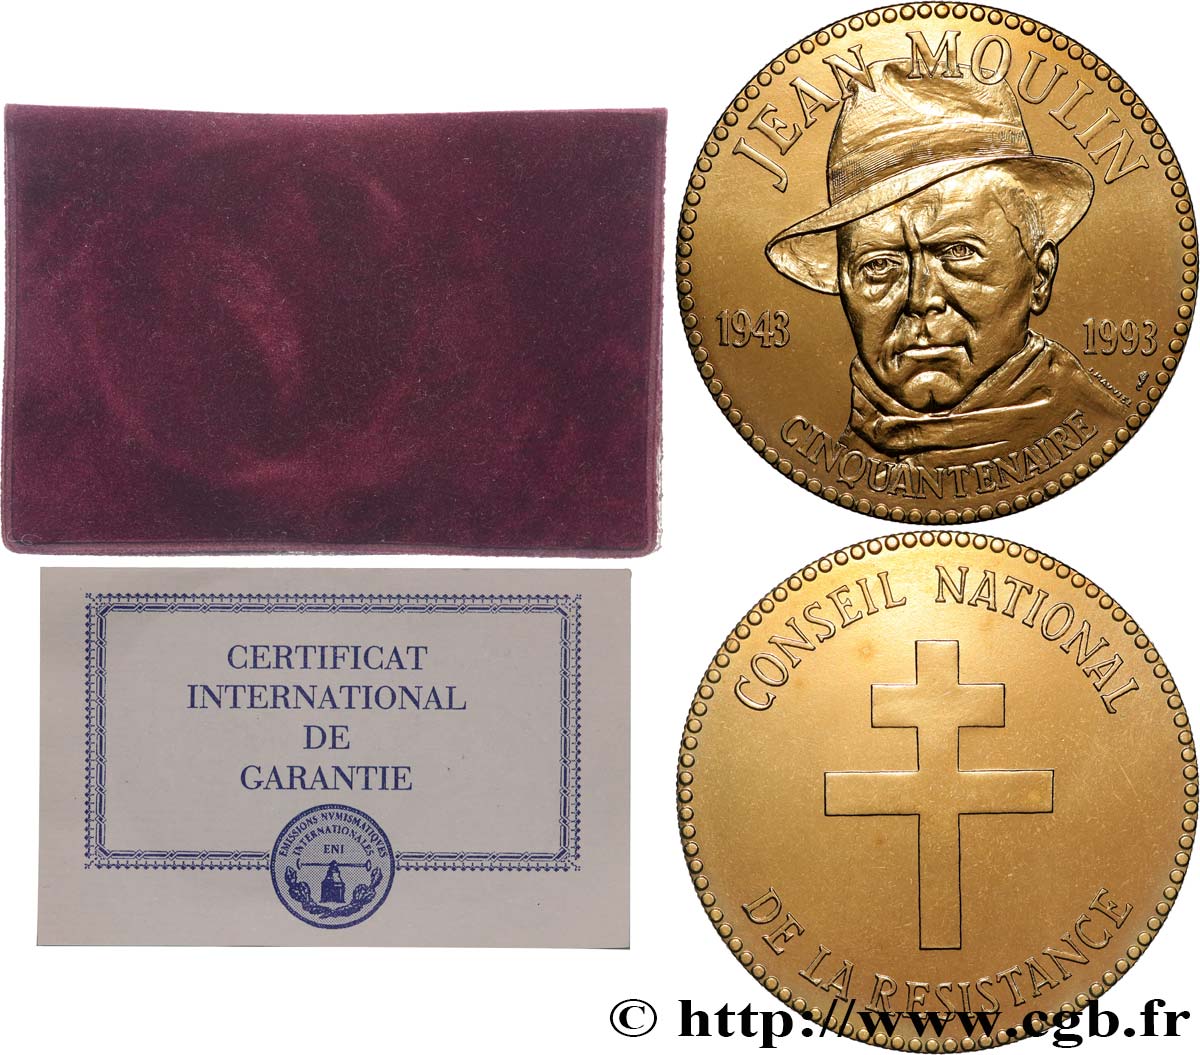 FAMOUS FIGURES Médaille, Jean Moulin, Conseil national de la résistance AU